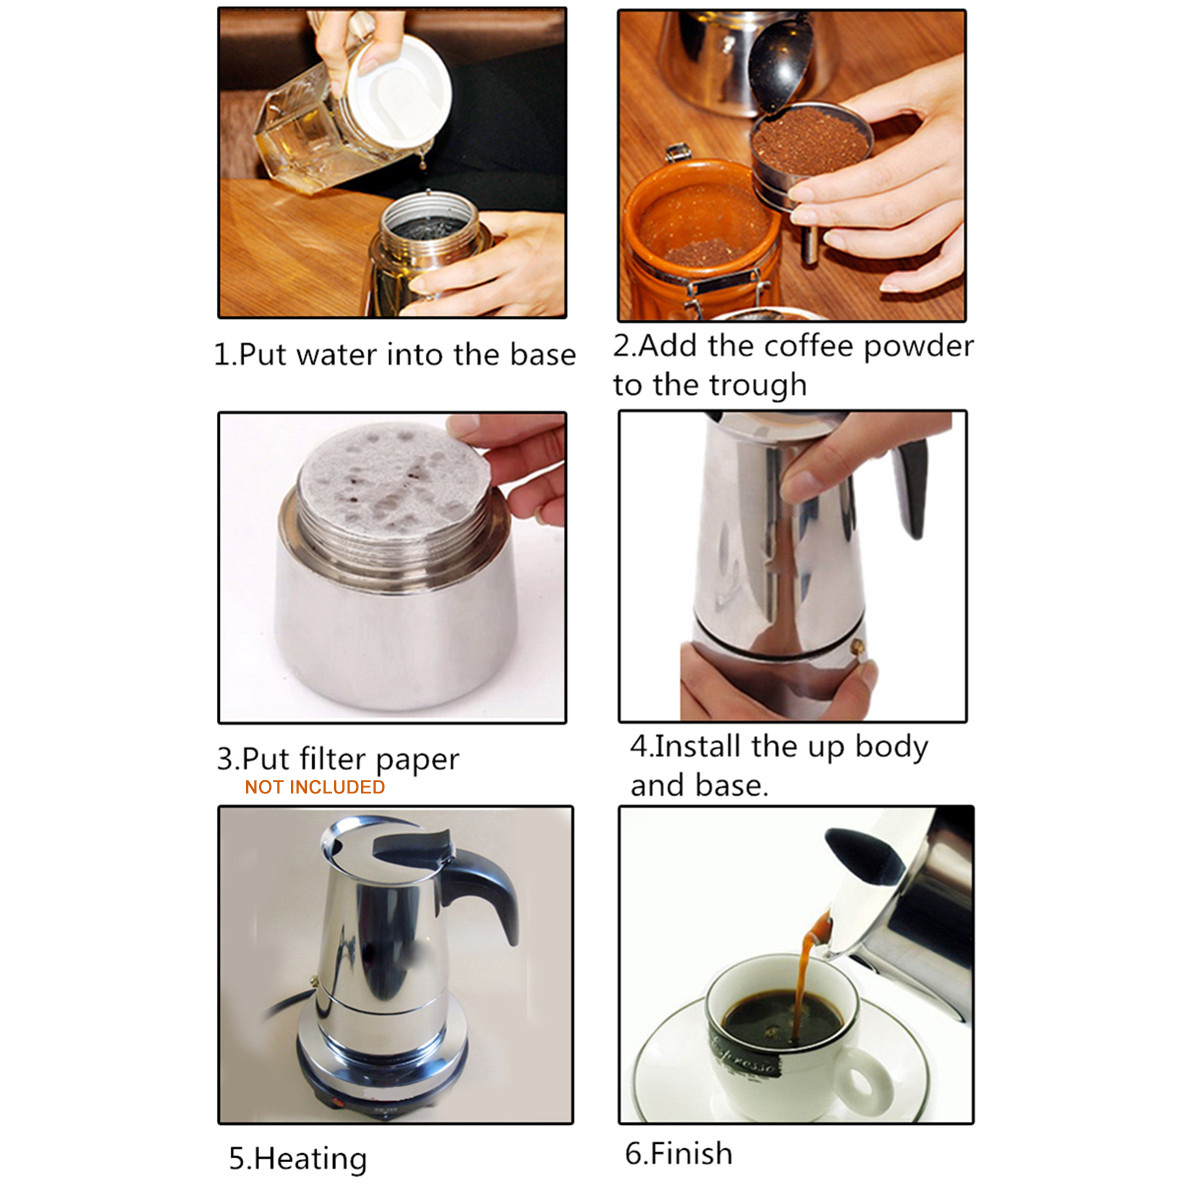 220V 500W 450ml Portable Coffee Espresso Pot Maker & Electric Stove Home Kitchen Tools 17